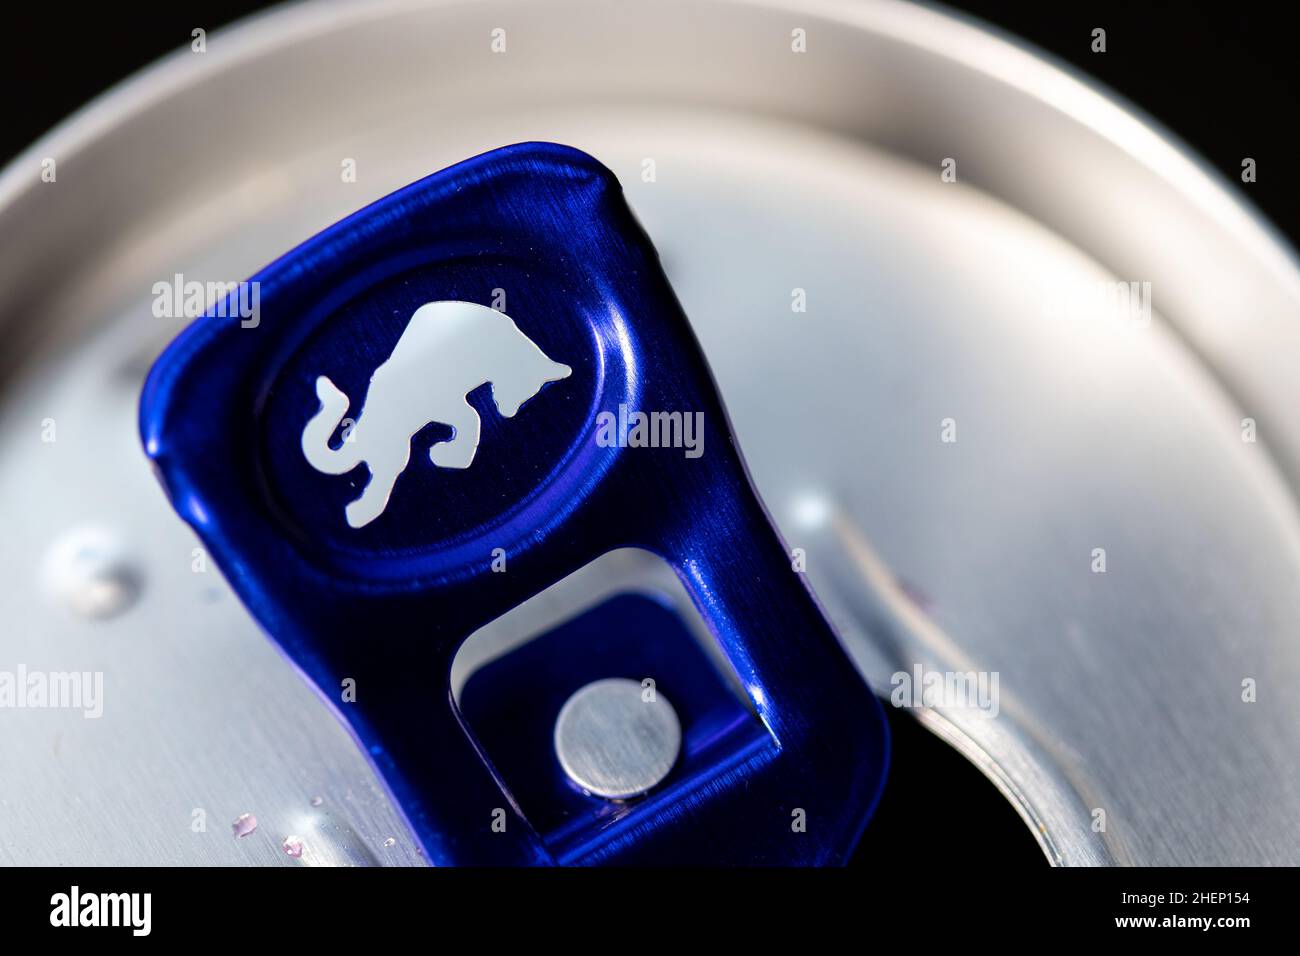 Eine Nahaufnahme einer blauen Red Bull Ikone auf einer geöffneten Dose Red Bull Energy Drink. Stockfoto